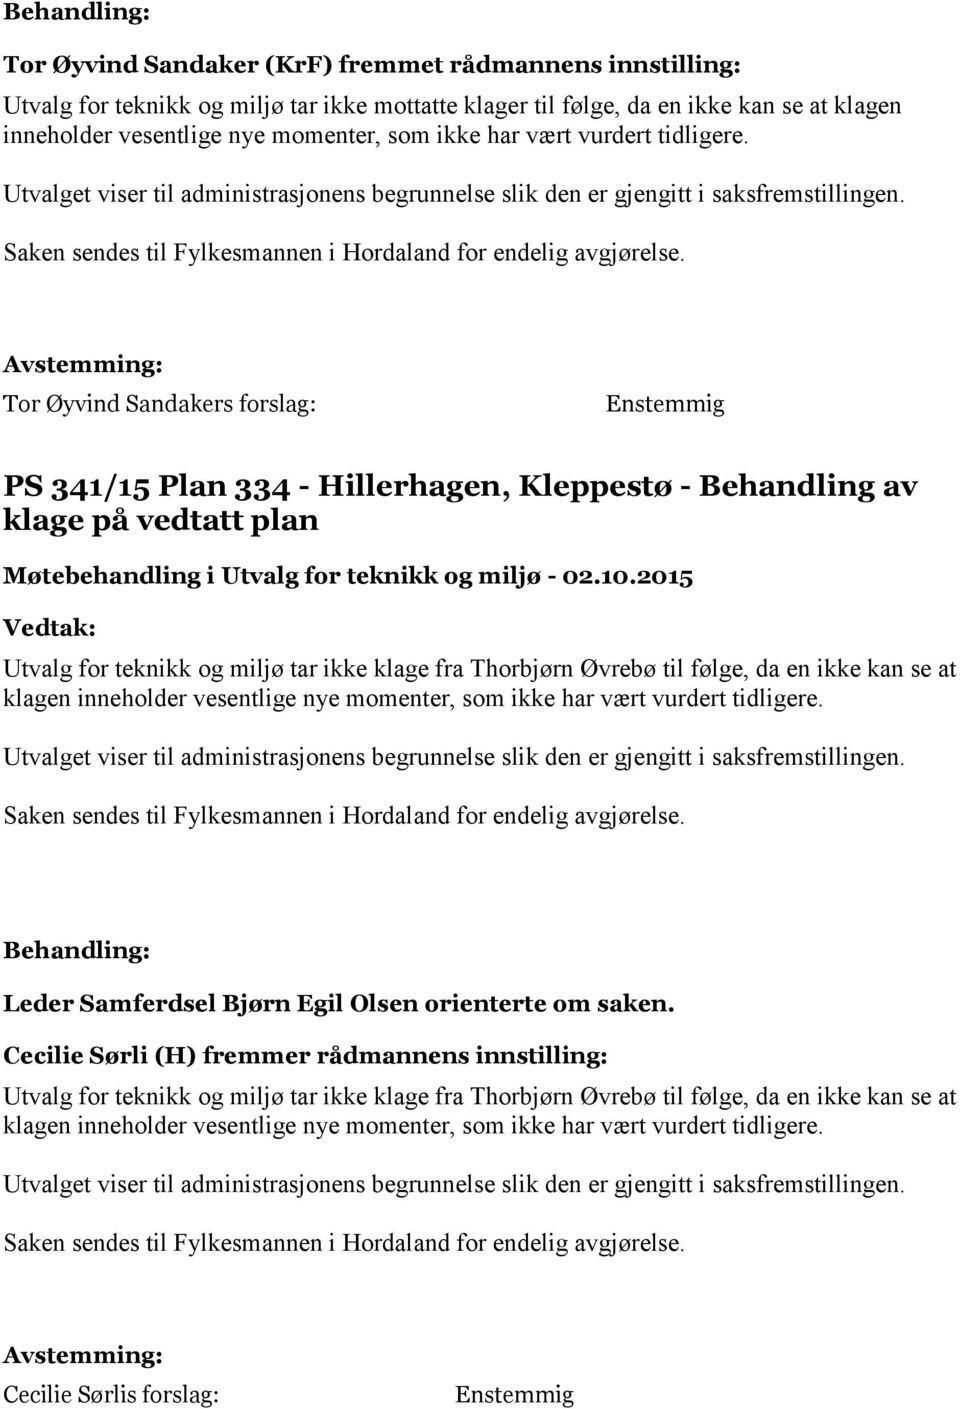 Tor Øyvind Sandakers forslag: Enstemmig PS 341/15 Plan 334 - Hillerhagen, Kleppestø - Behandling av klage på vedtatt plan Utvalg for teknikk og miljø tar ikke klage fra Thorbjørn Øvrebø til følge, da